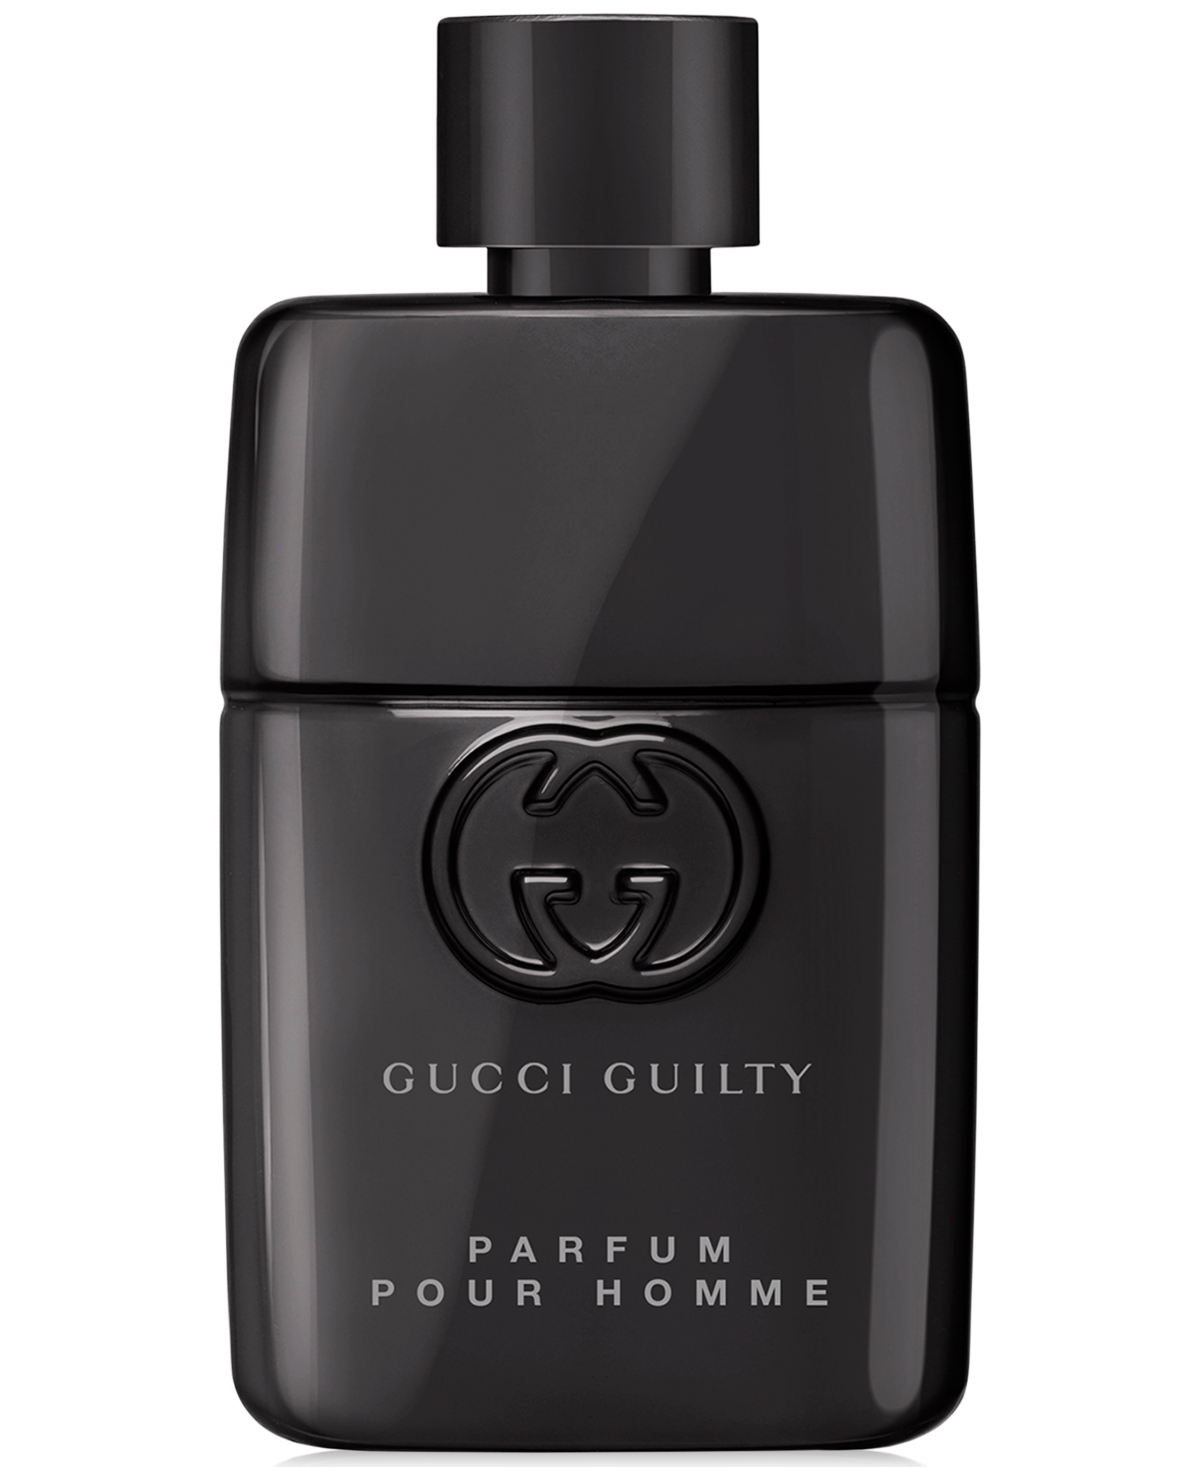 Gucci Men's Guilty Pour Homme Parfum Spray, 6.7 oz. Reviews - Cologne - Beauty - Macy's